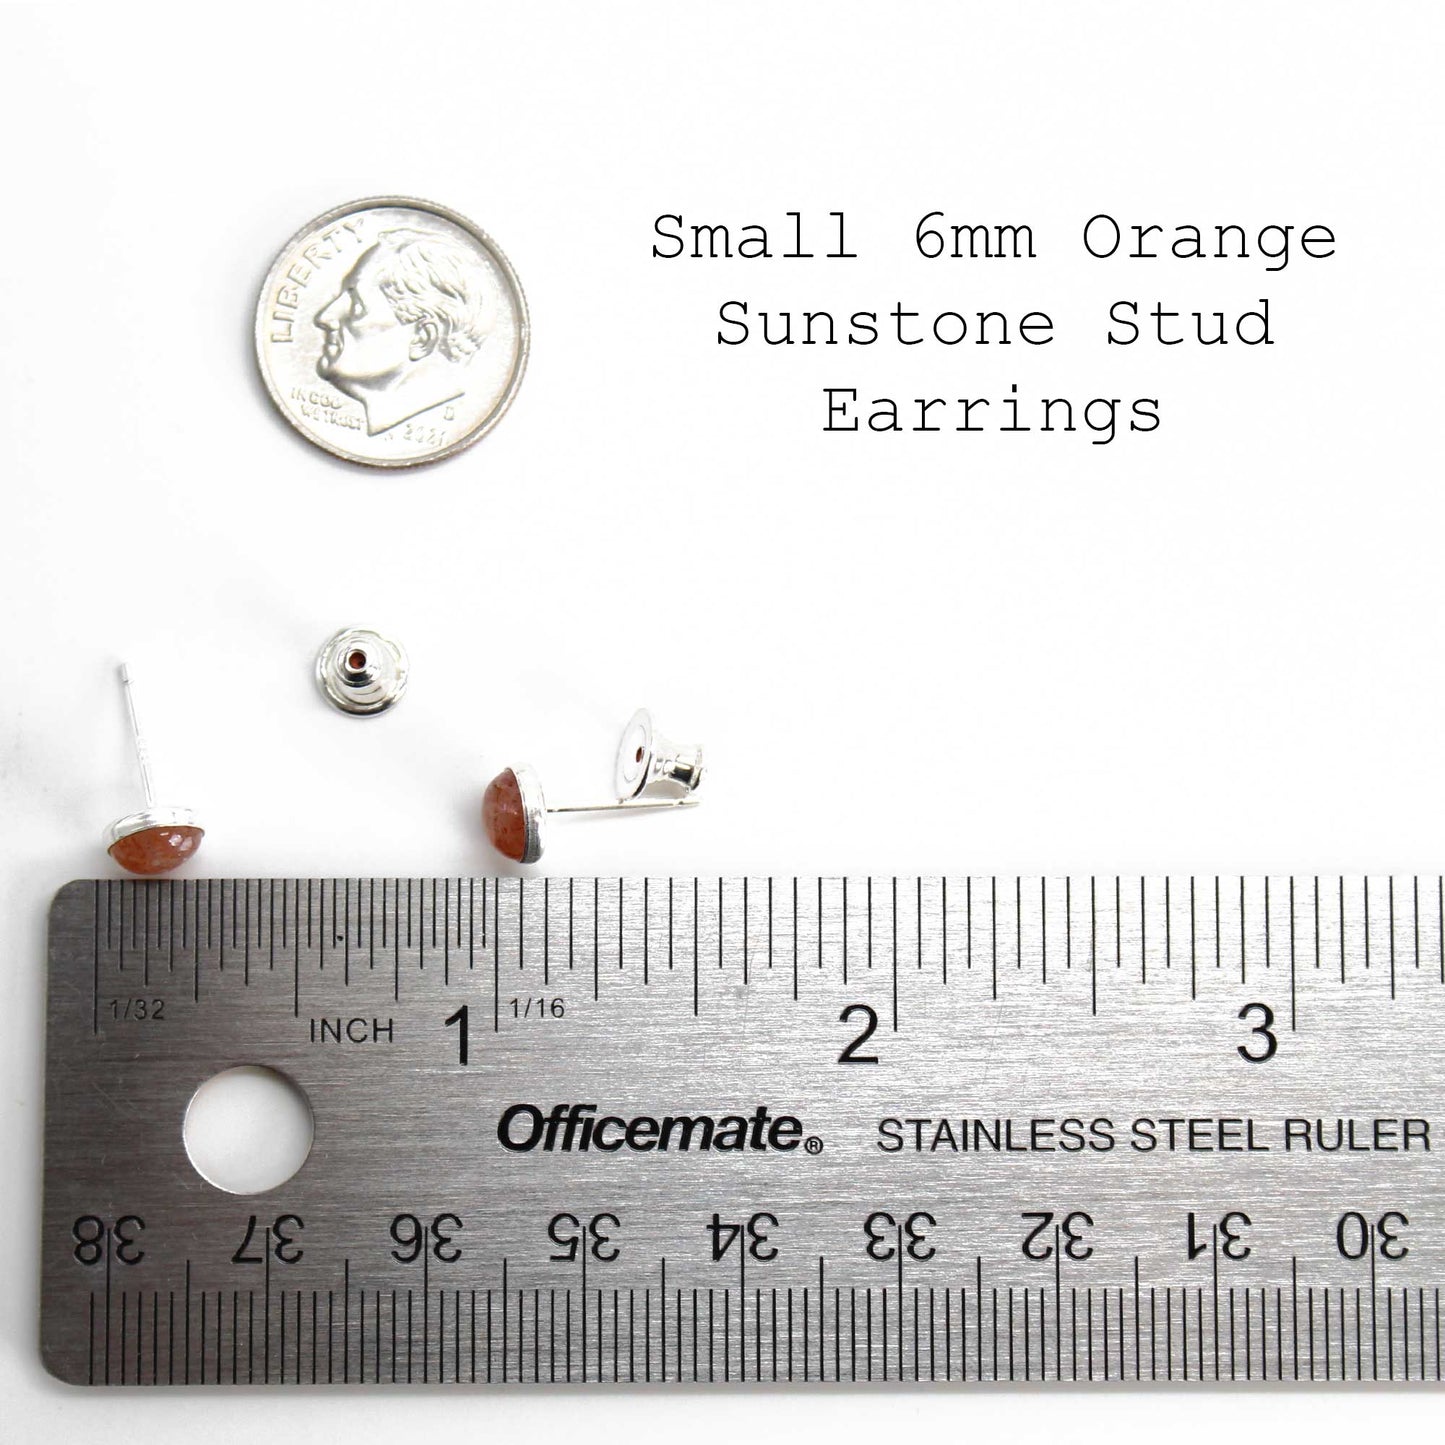 6mm Sunstone Stud Earrings in Sterling Silver